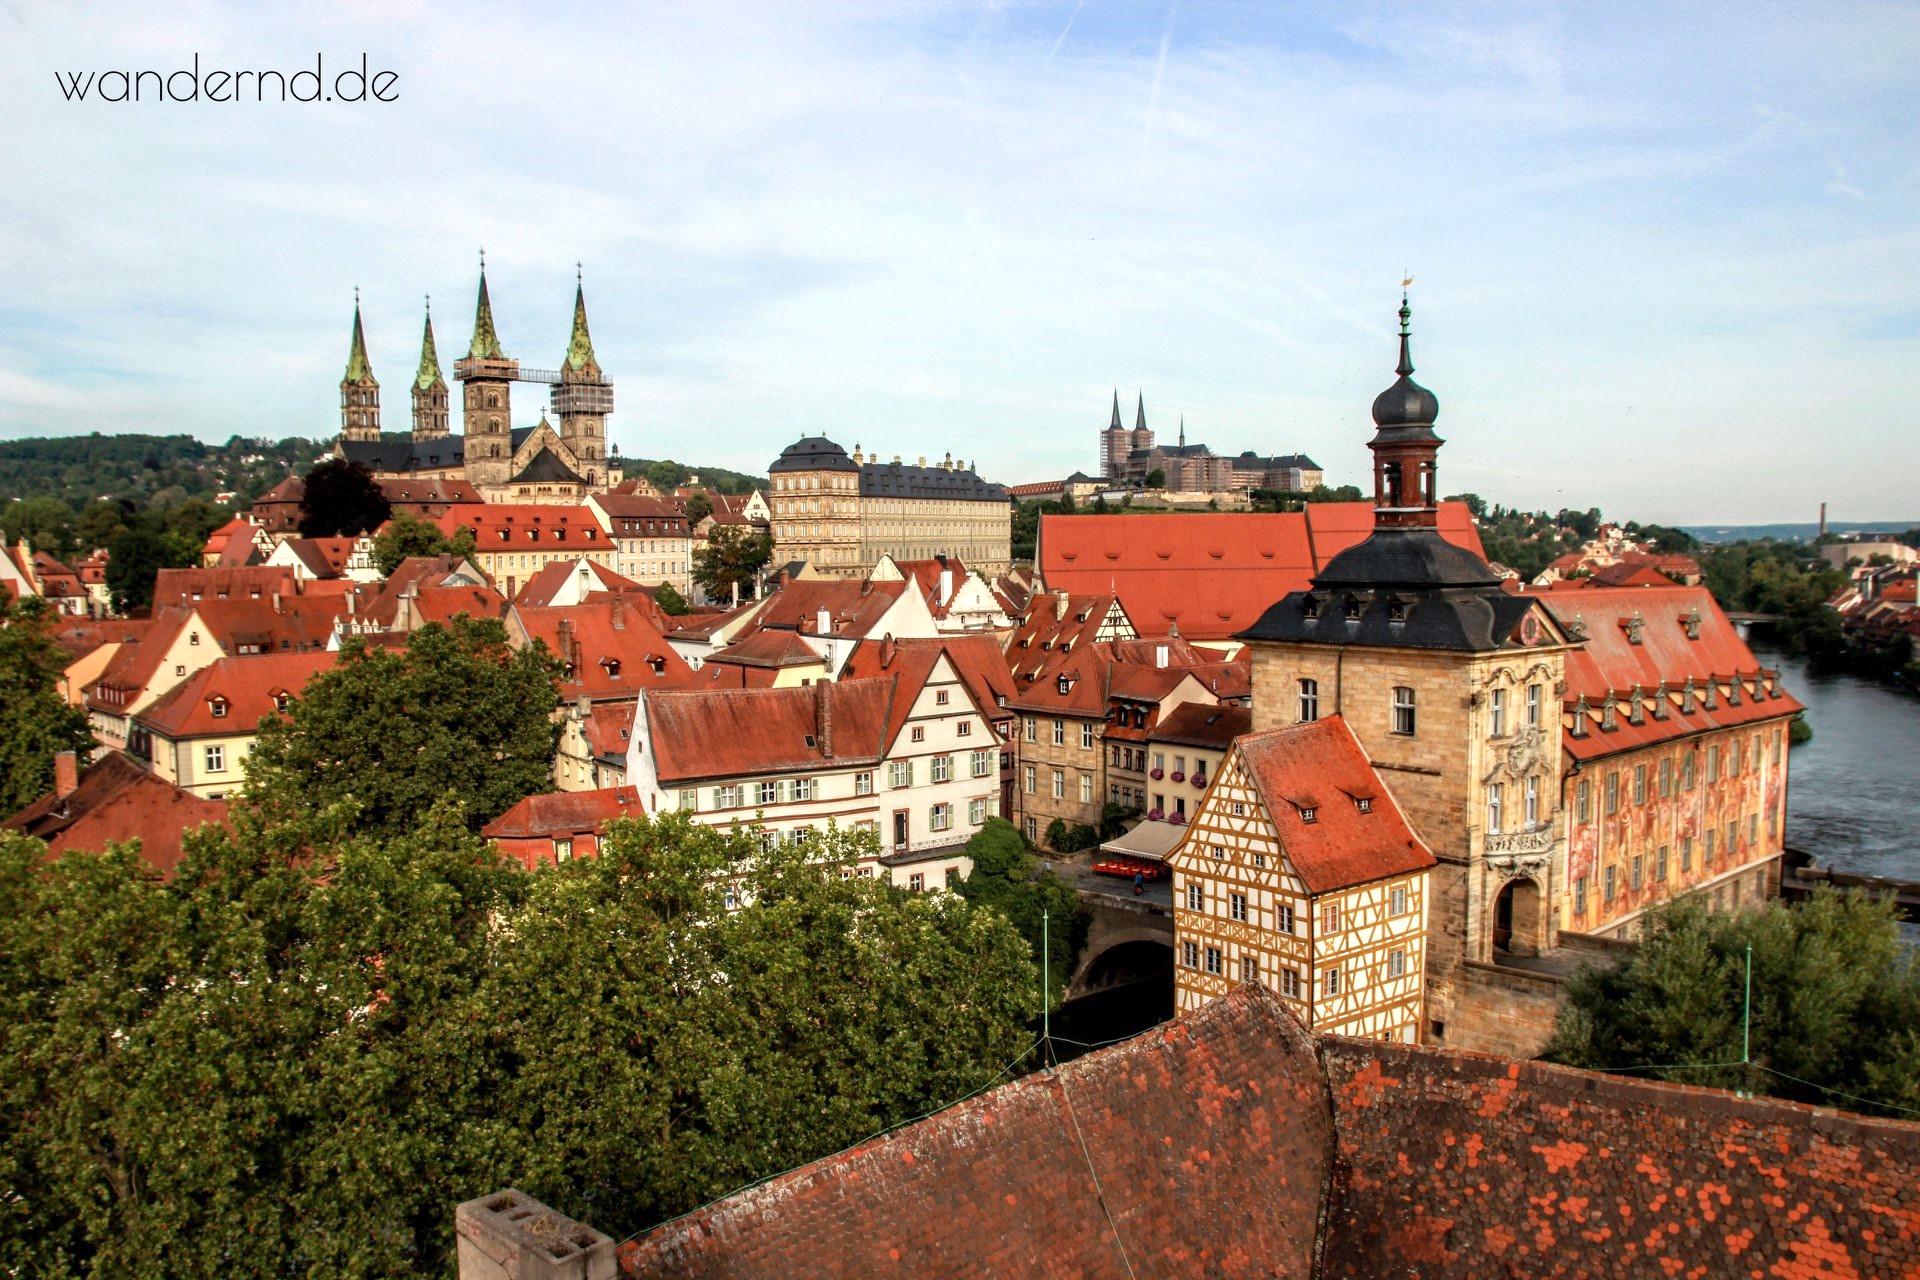 Weltkulturerbe-Stadt Bamberg